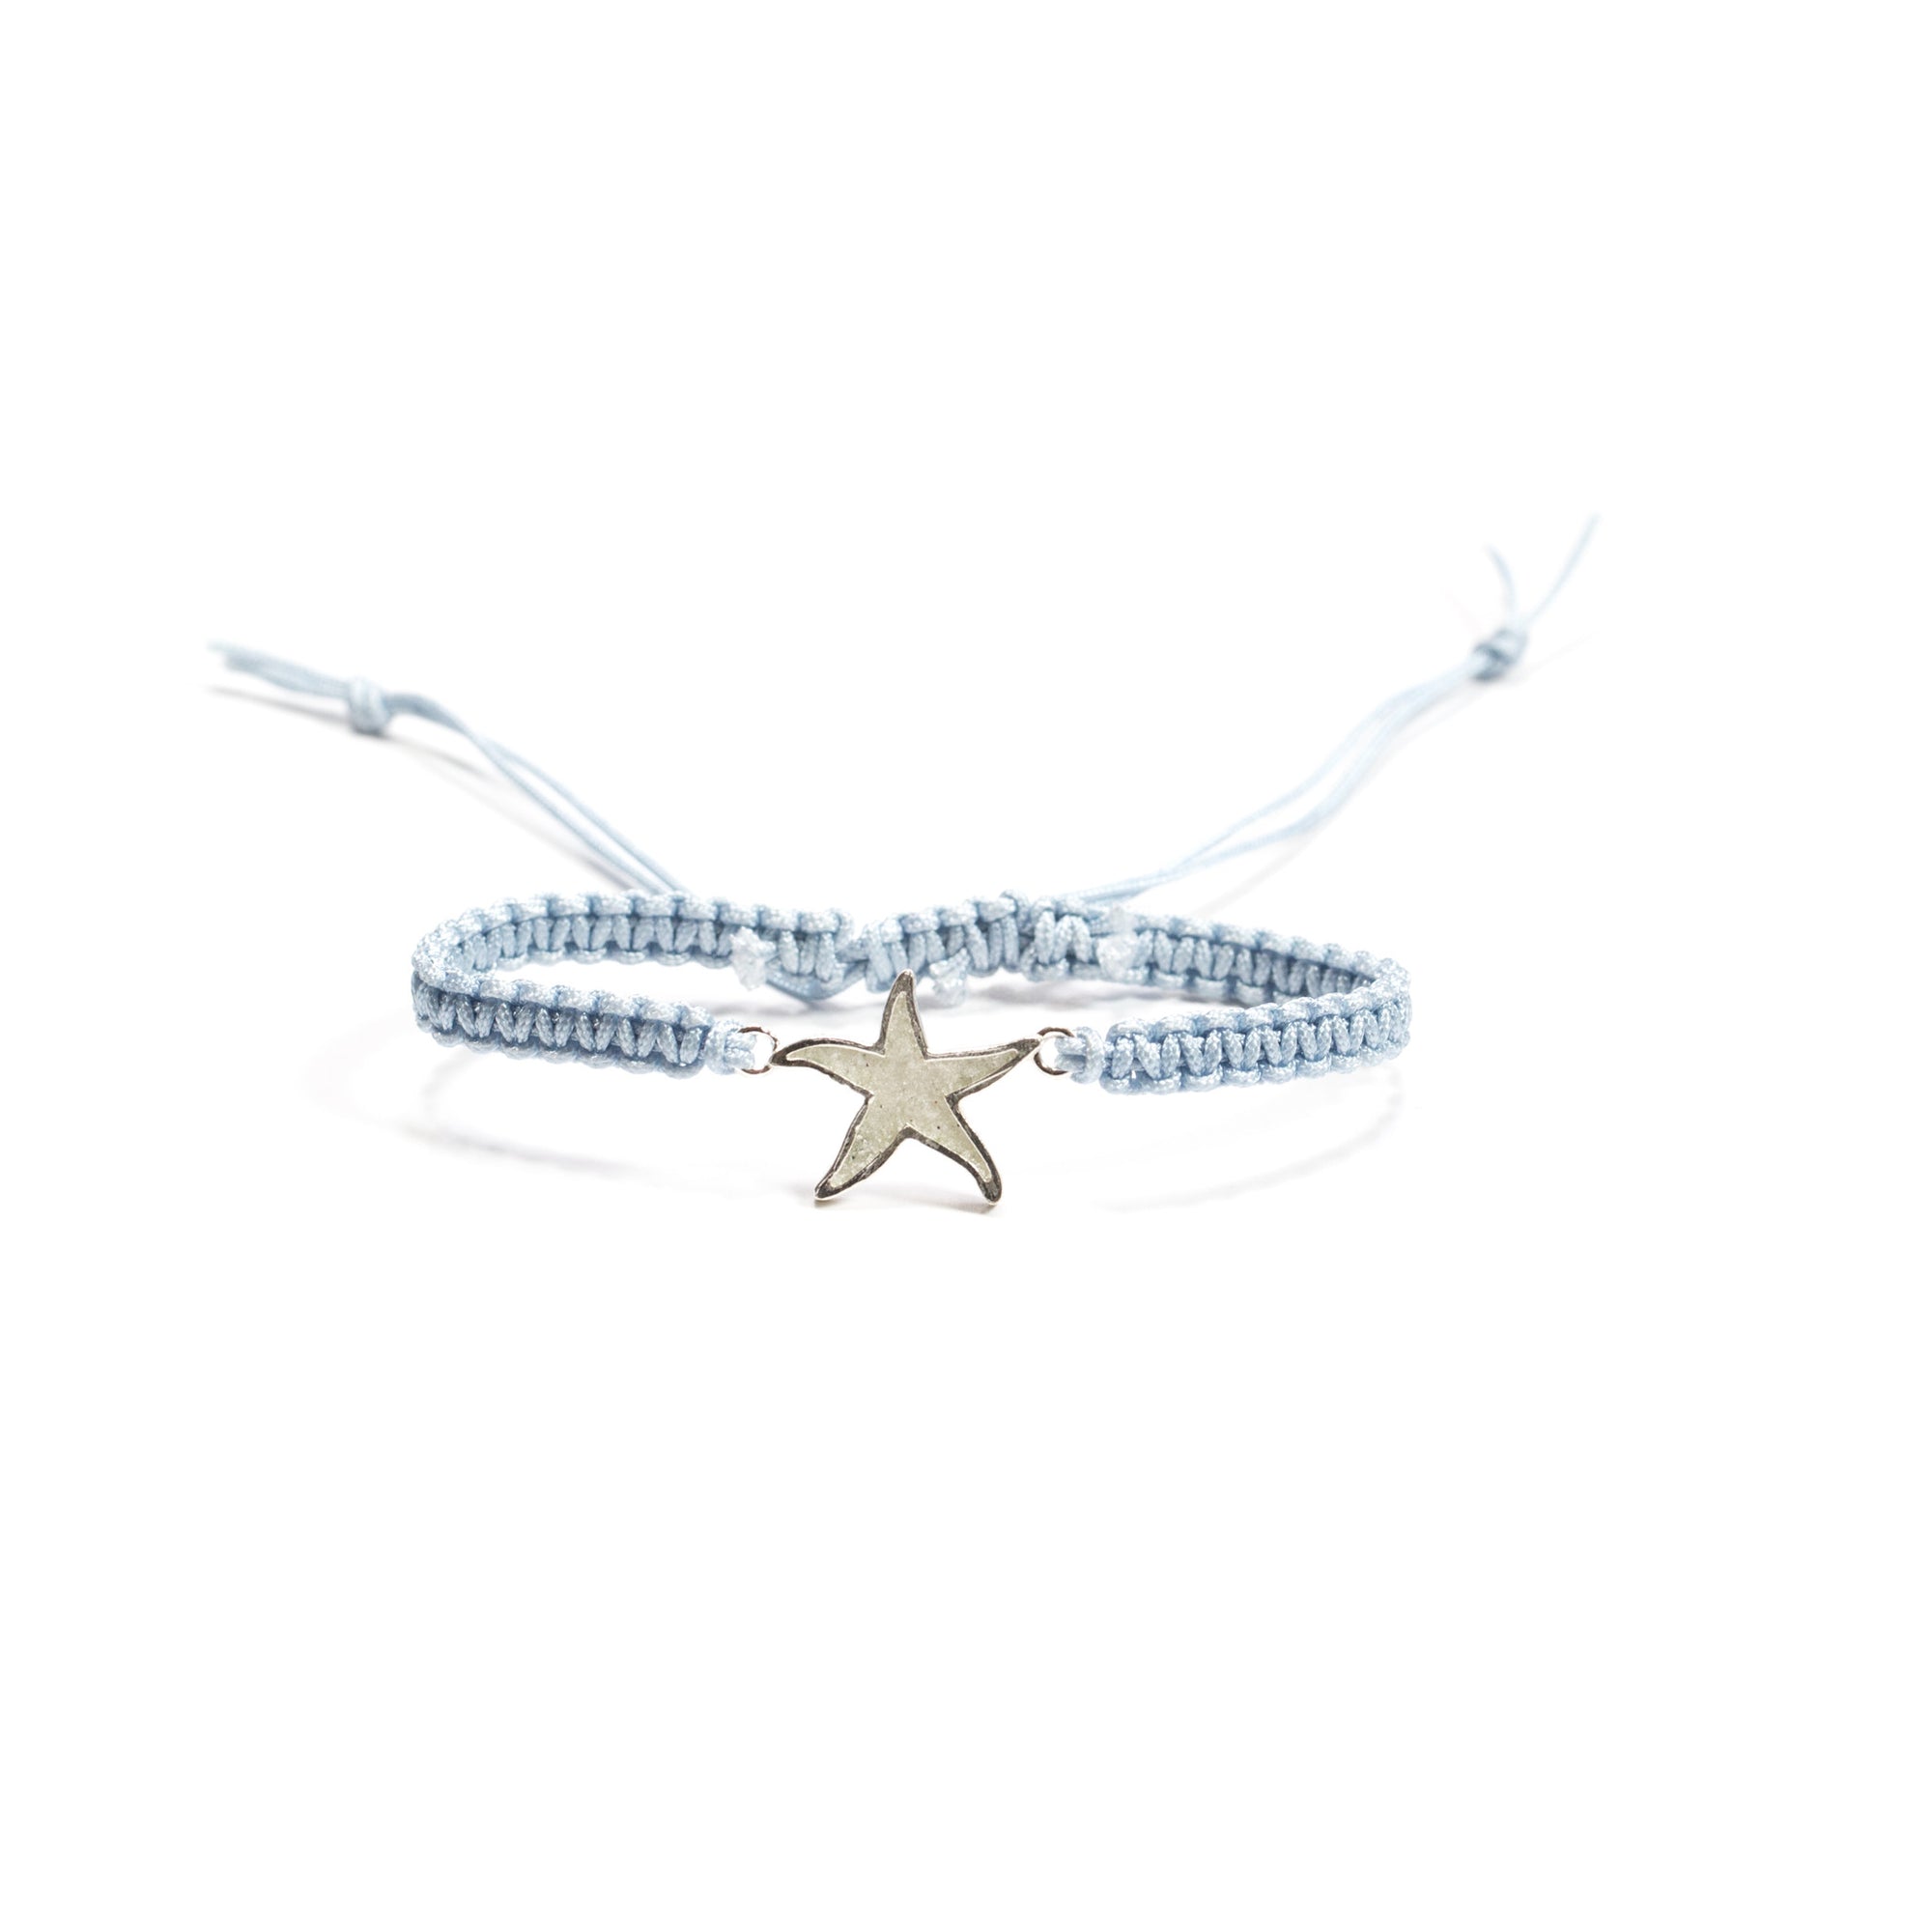 Beach Sand Jewelry - Starfish Macrame Bracelet ©Tropicality